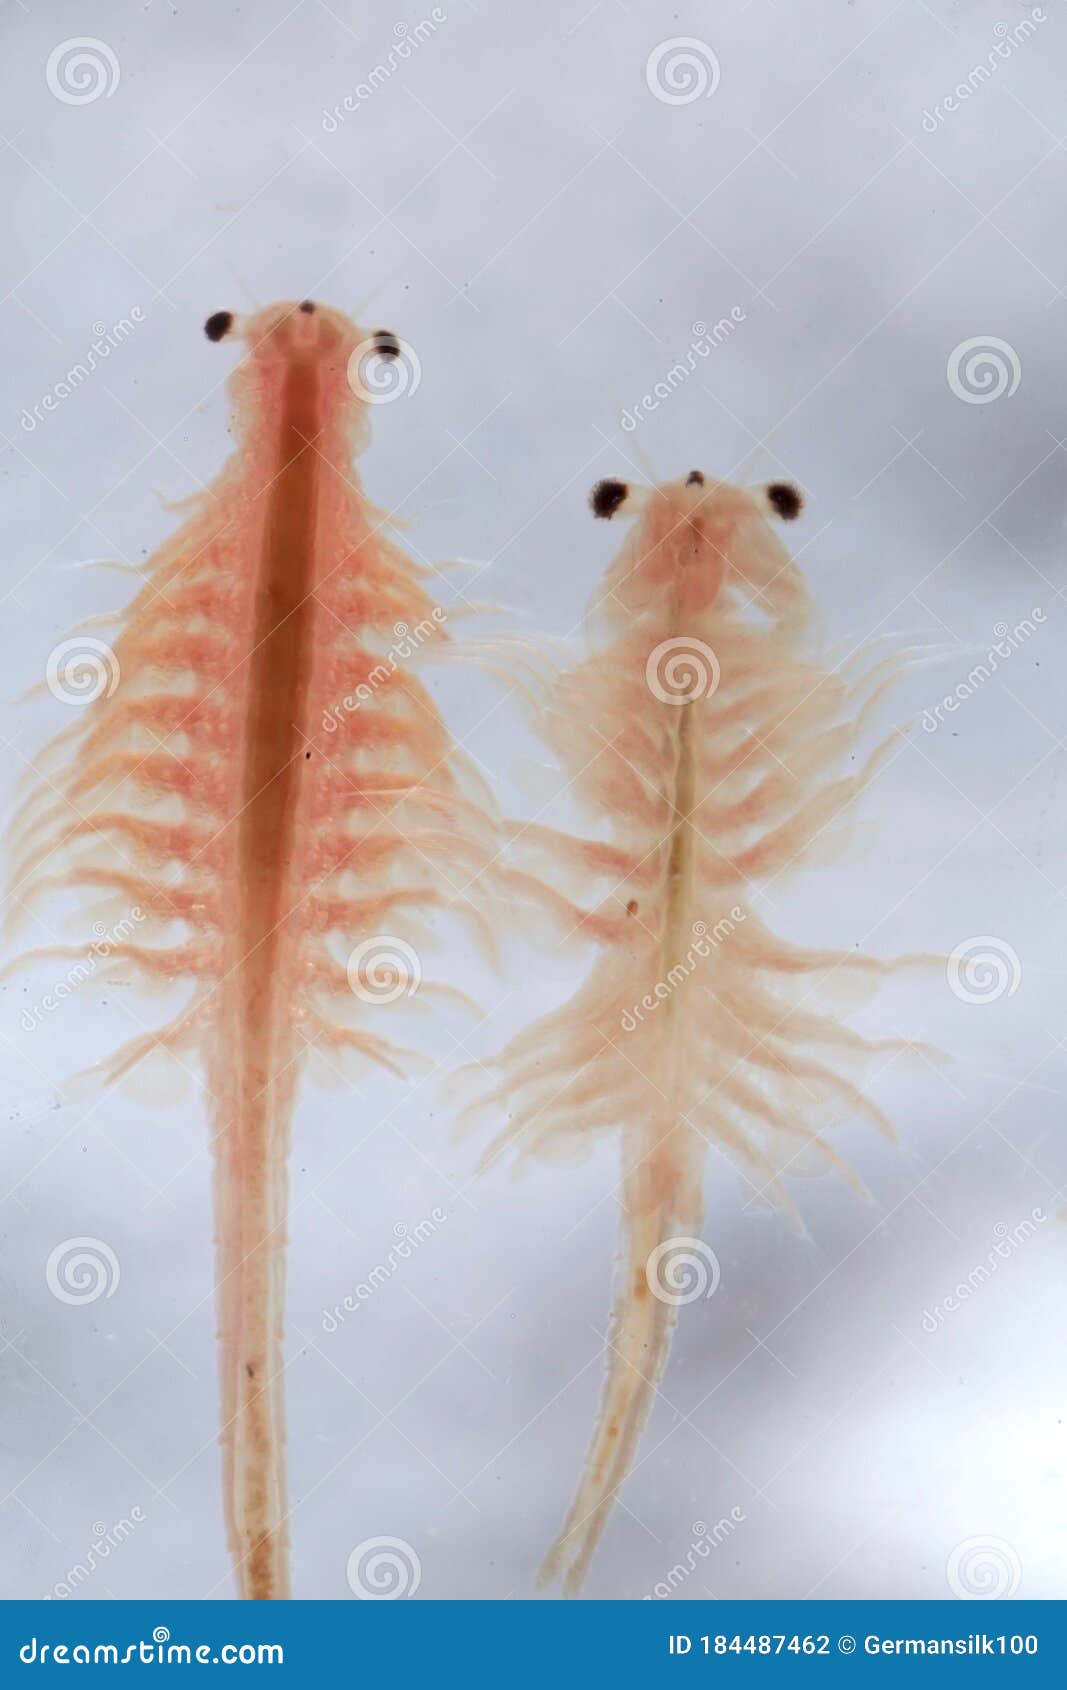 https://thumbs.dreamstime.com/z/super-macro-close-up-artemia-salina-million-old-species-brine-shrimp-aquatic-crustaceans-184487462.jpg